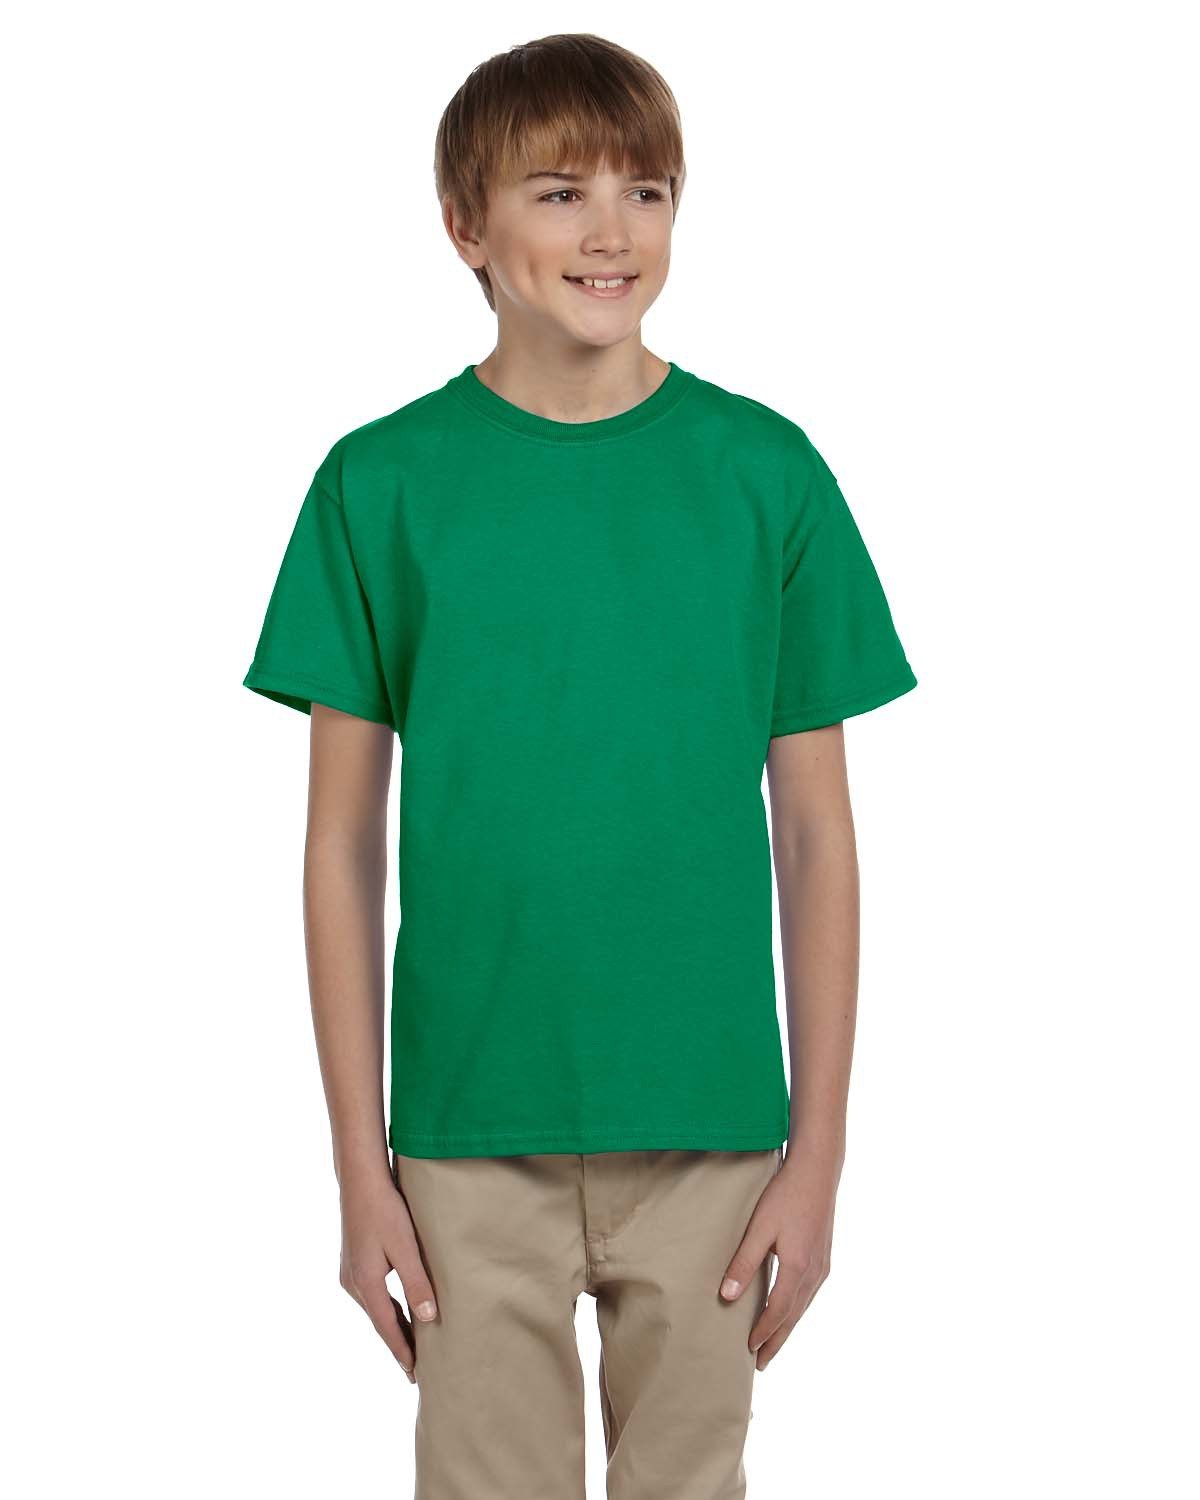 Kids Tie Dye T-shirt - Kelly Green, Small 